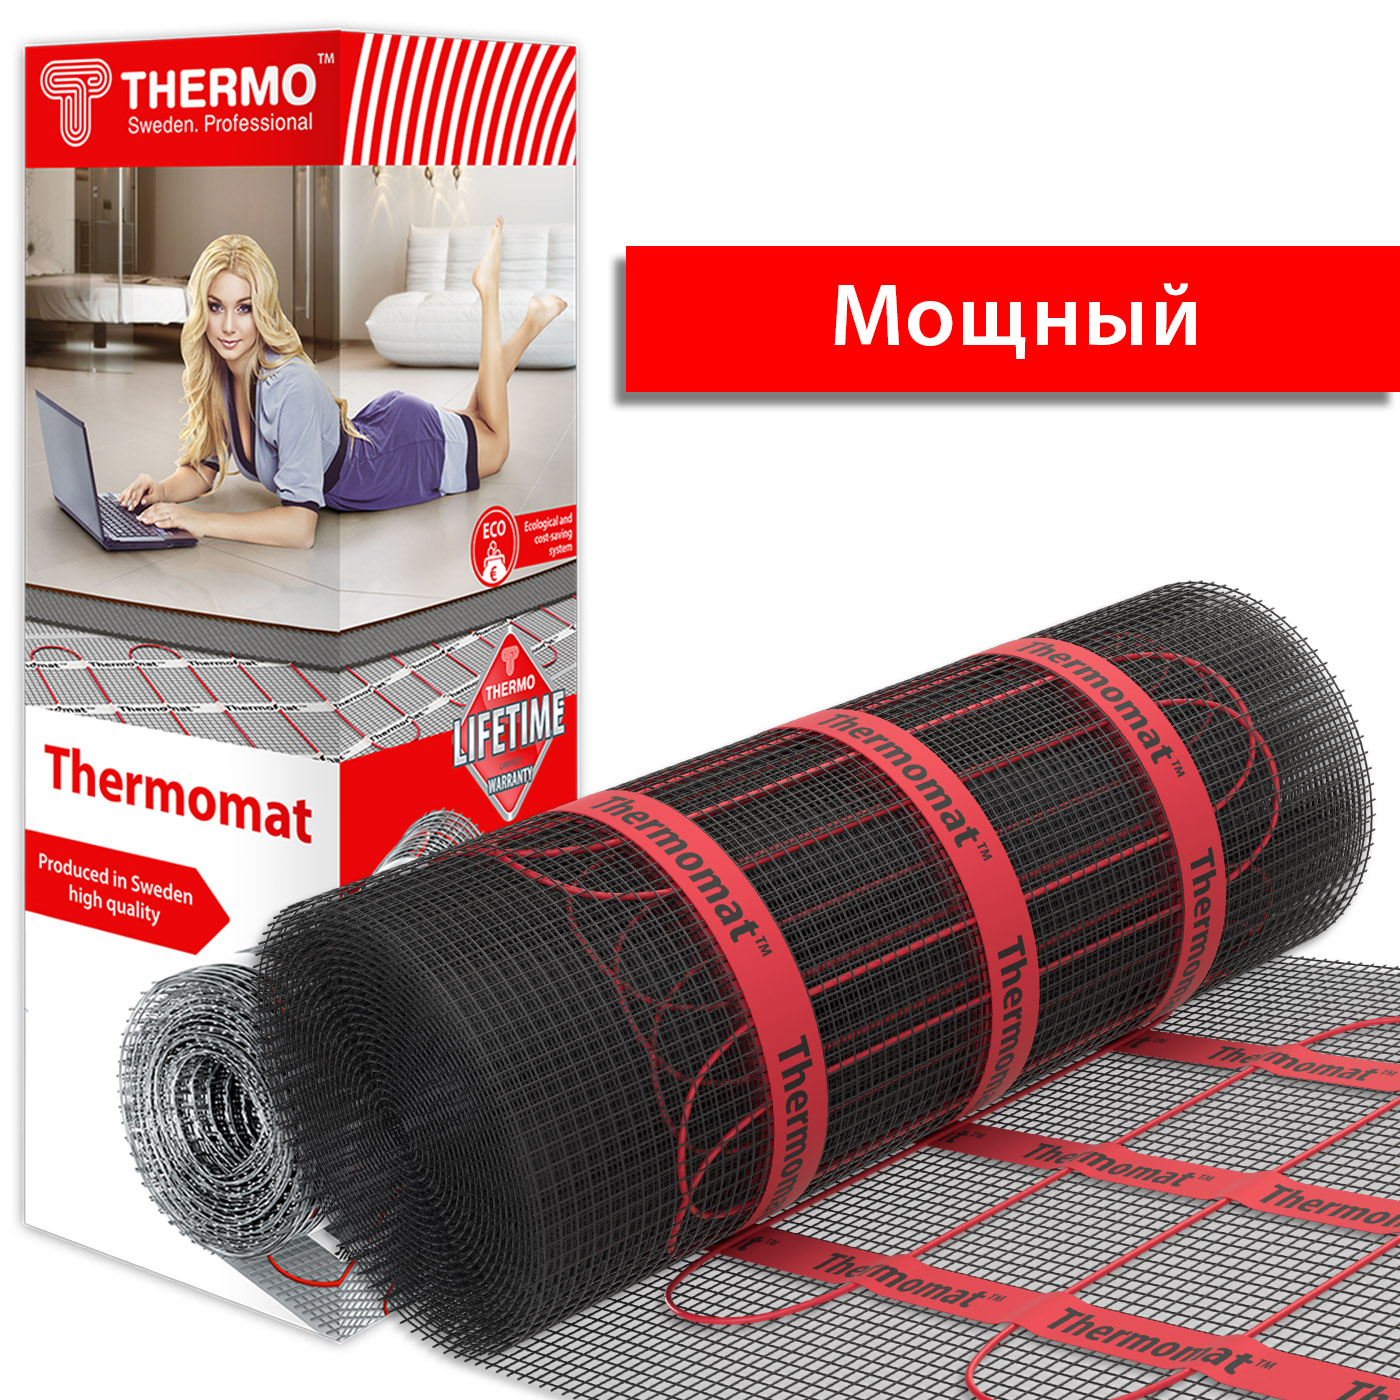 Нагревательный мат Thermomat TVK-210 Вт/кв.м